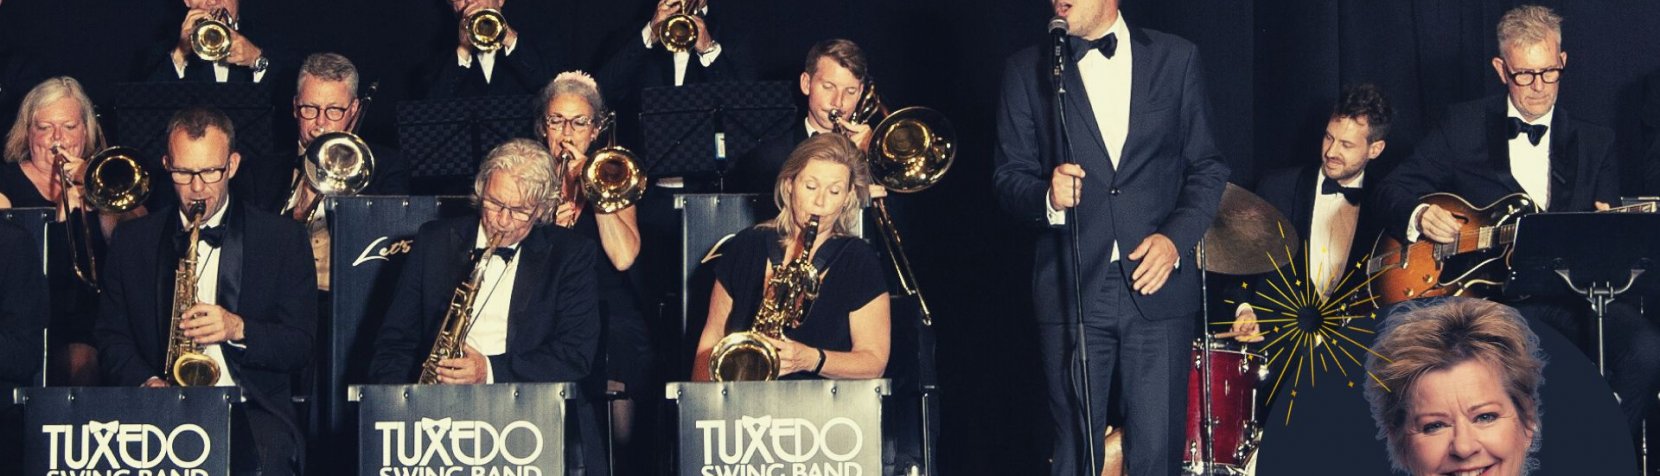 Tuxedo Swing Band med Pernille Schrøder